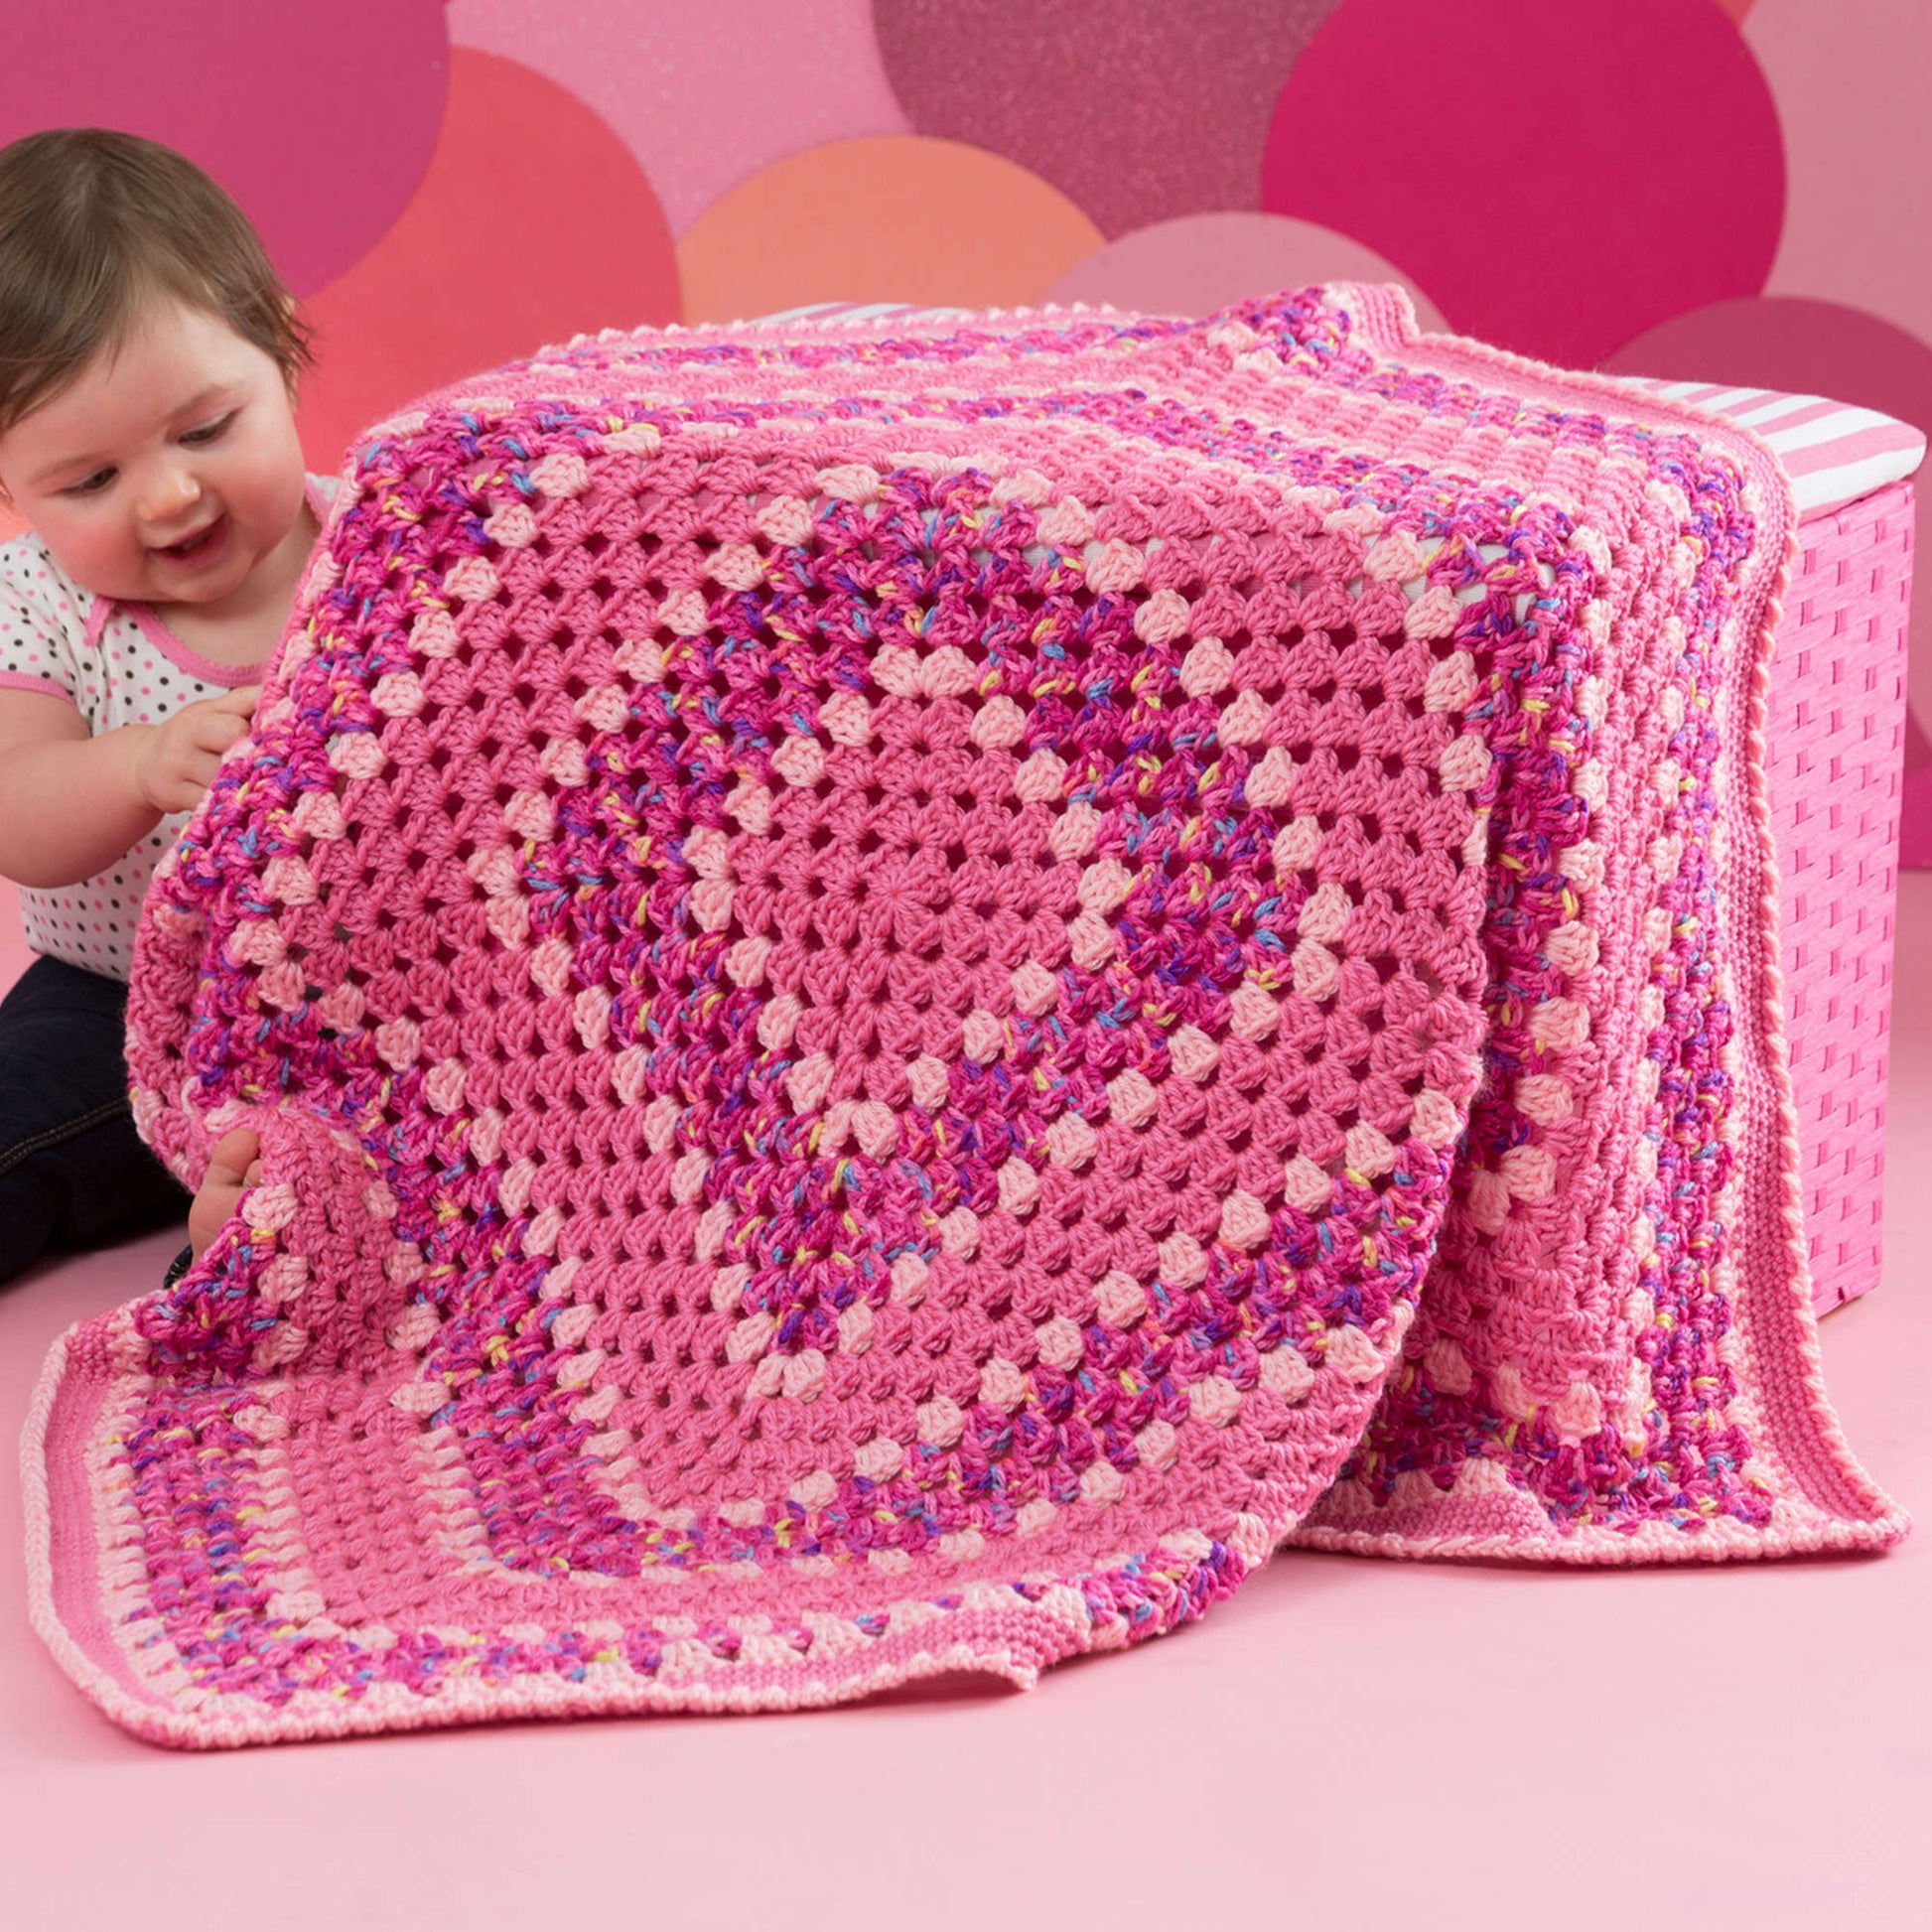 Free Red Heart Make It Pink Crochet Blanket Pattern